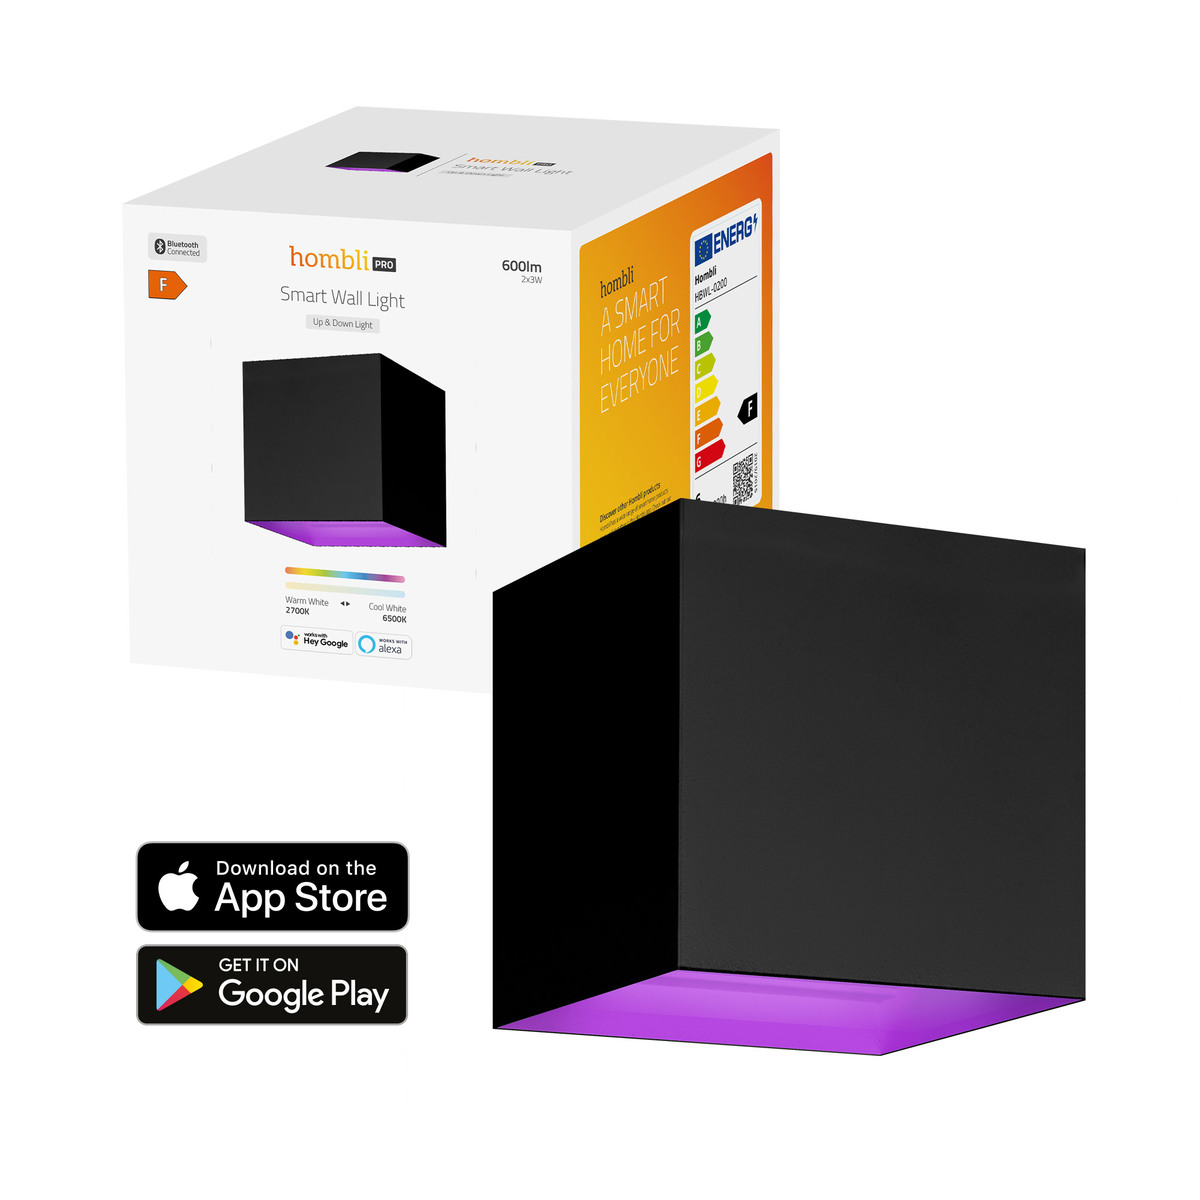 Hombli smarte Außenwandleuchte schwarz 600lm | Lampen Indoor App B-Ware kaufen RGBW bei \